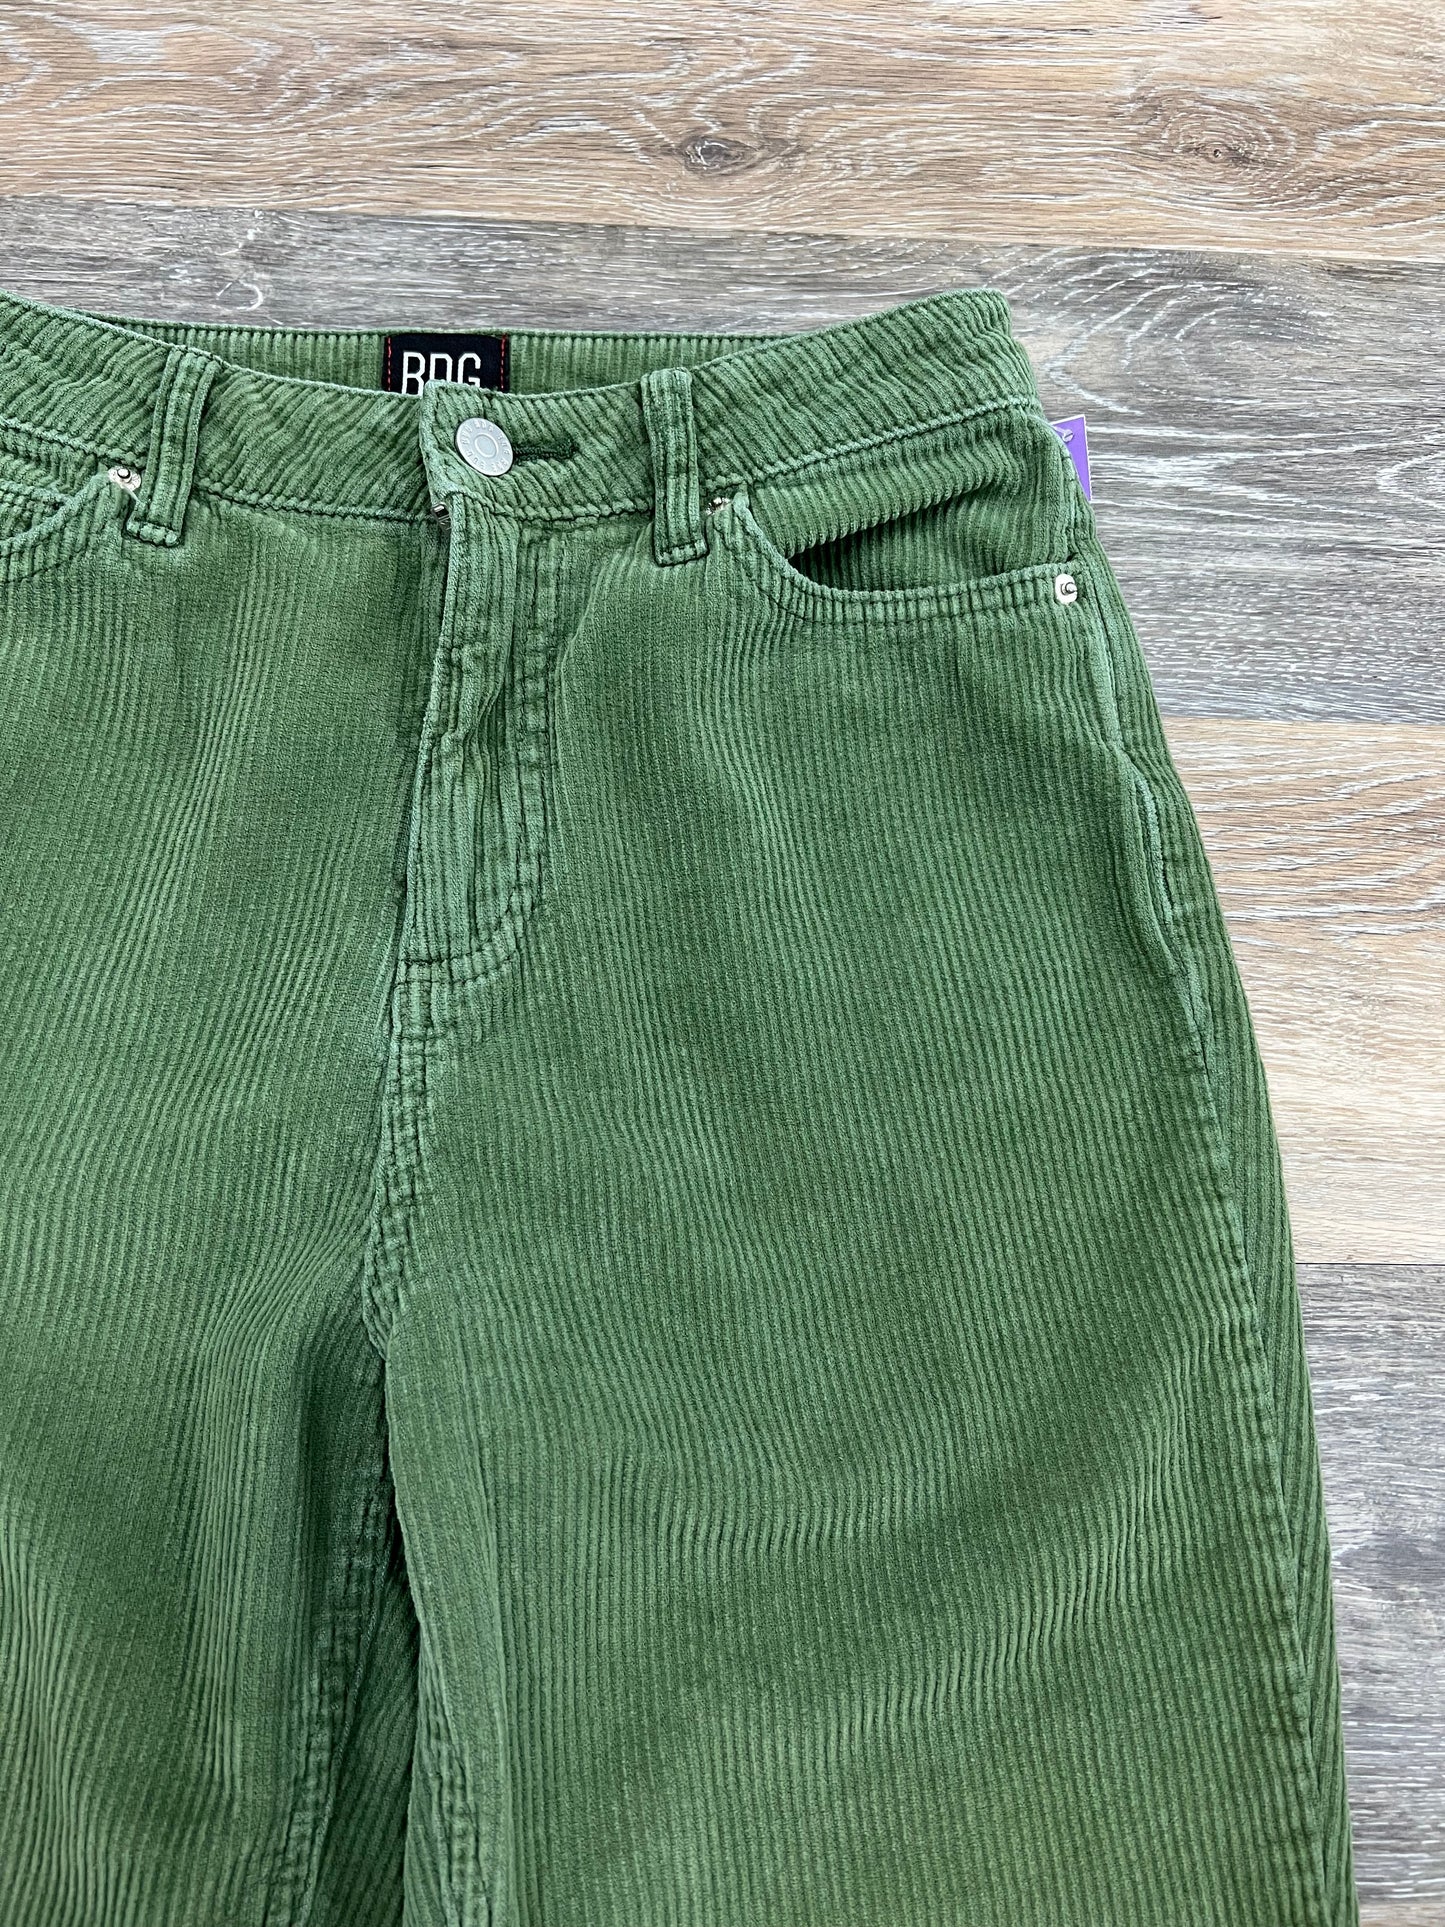 Pants Corduroy By Bdg  Size: 2/26